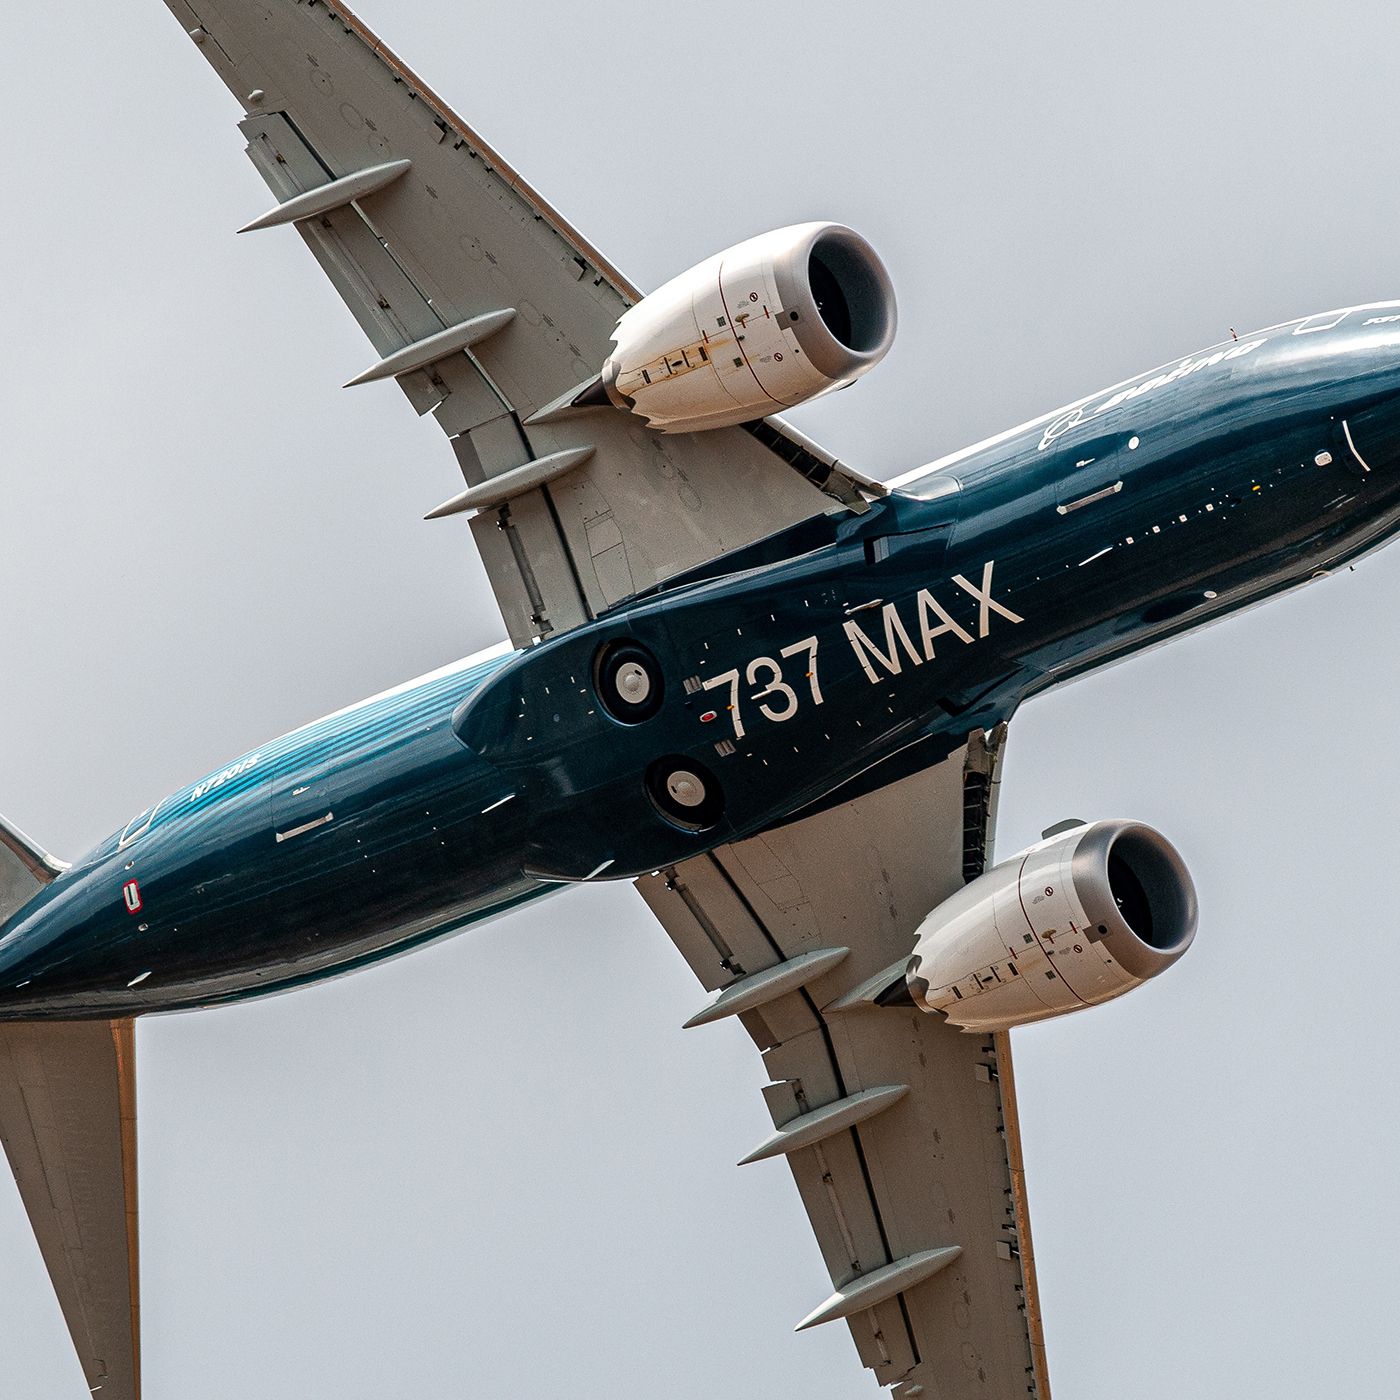 177: Chad's Flight on a 737 MAX